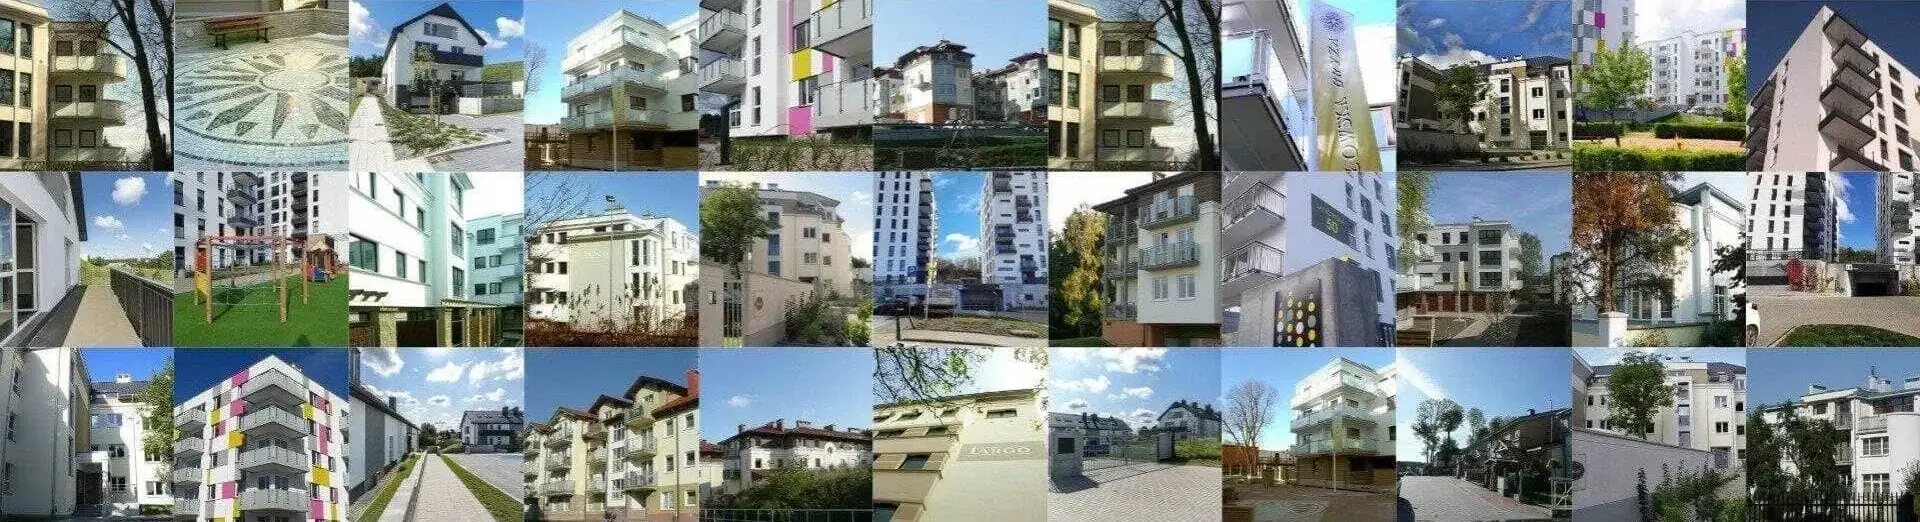 widok mieszkań zrealizowanych